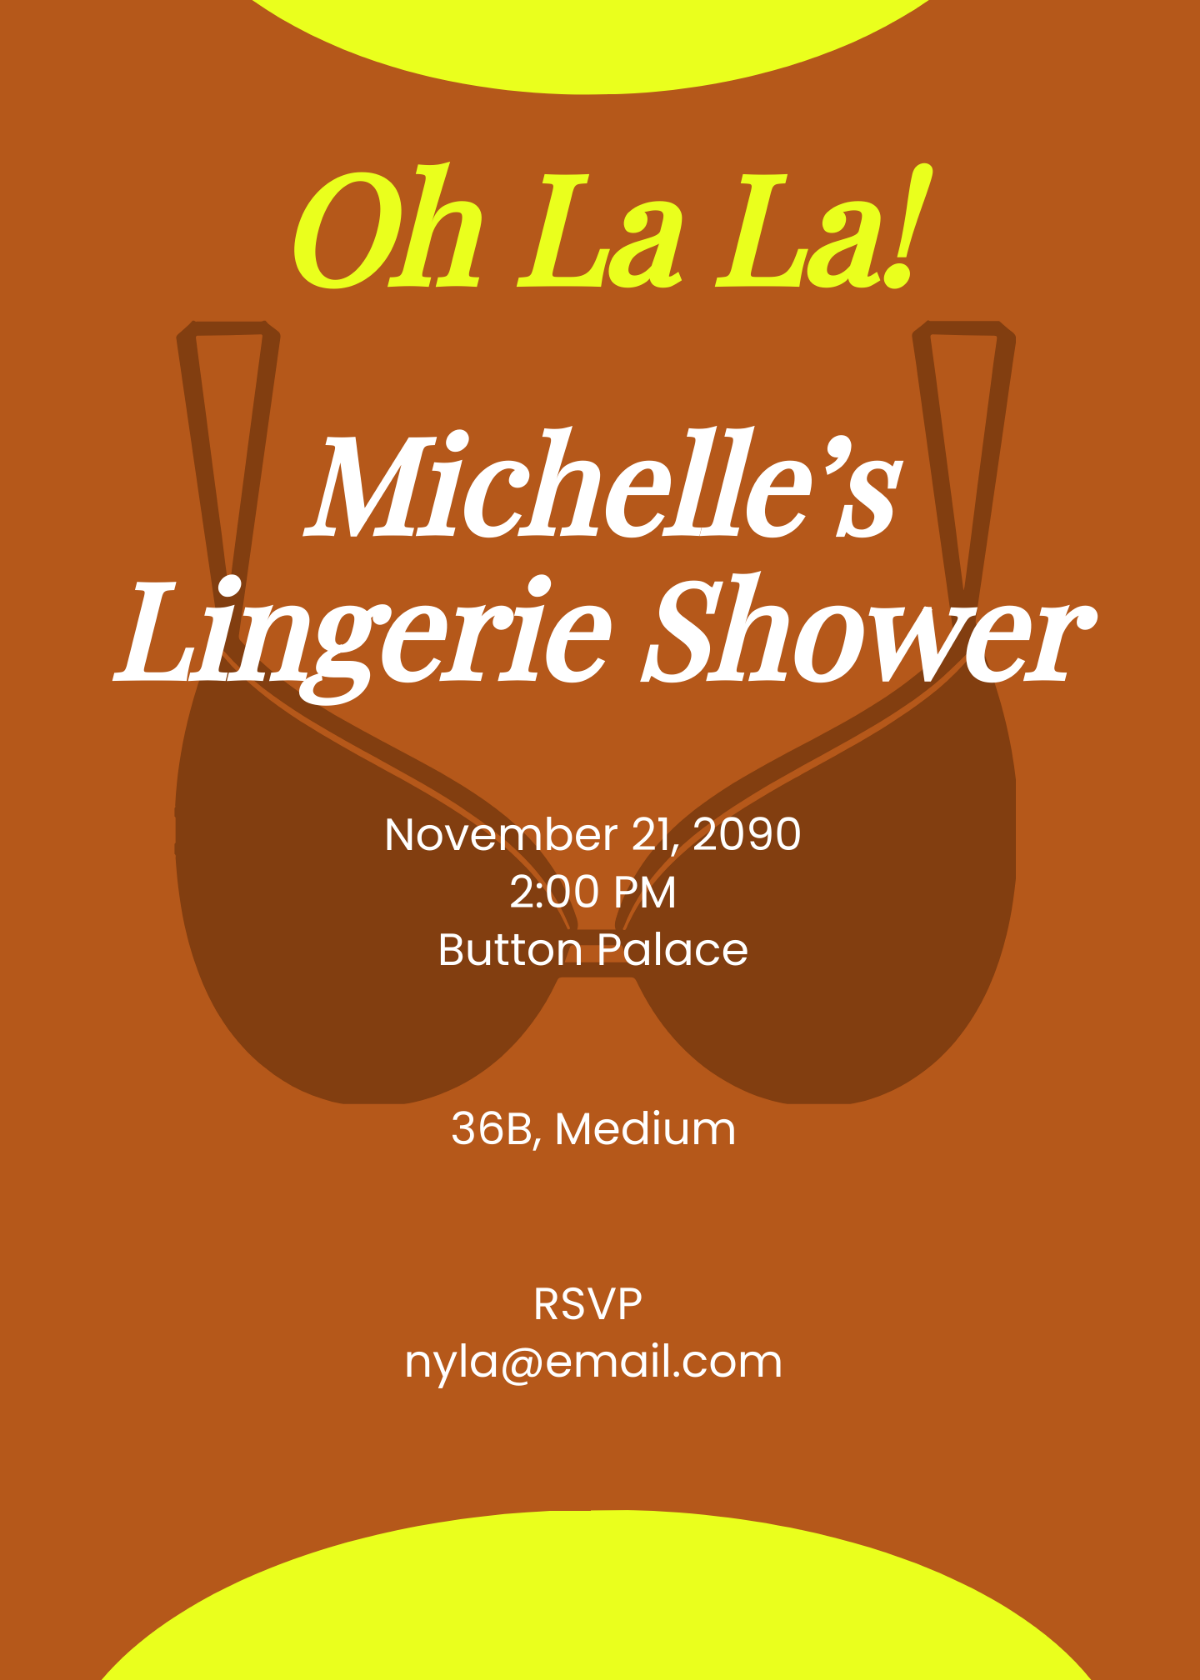 Oh La La Lingerie Shower Invitation Template